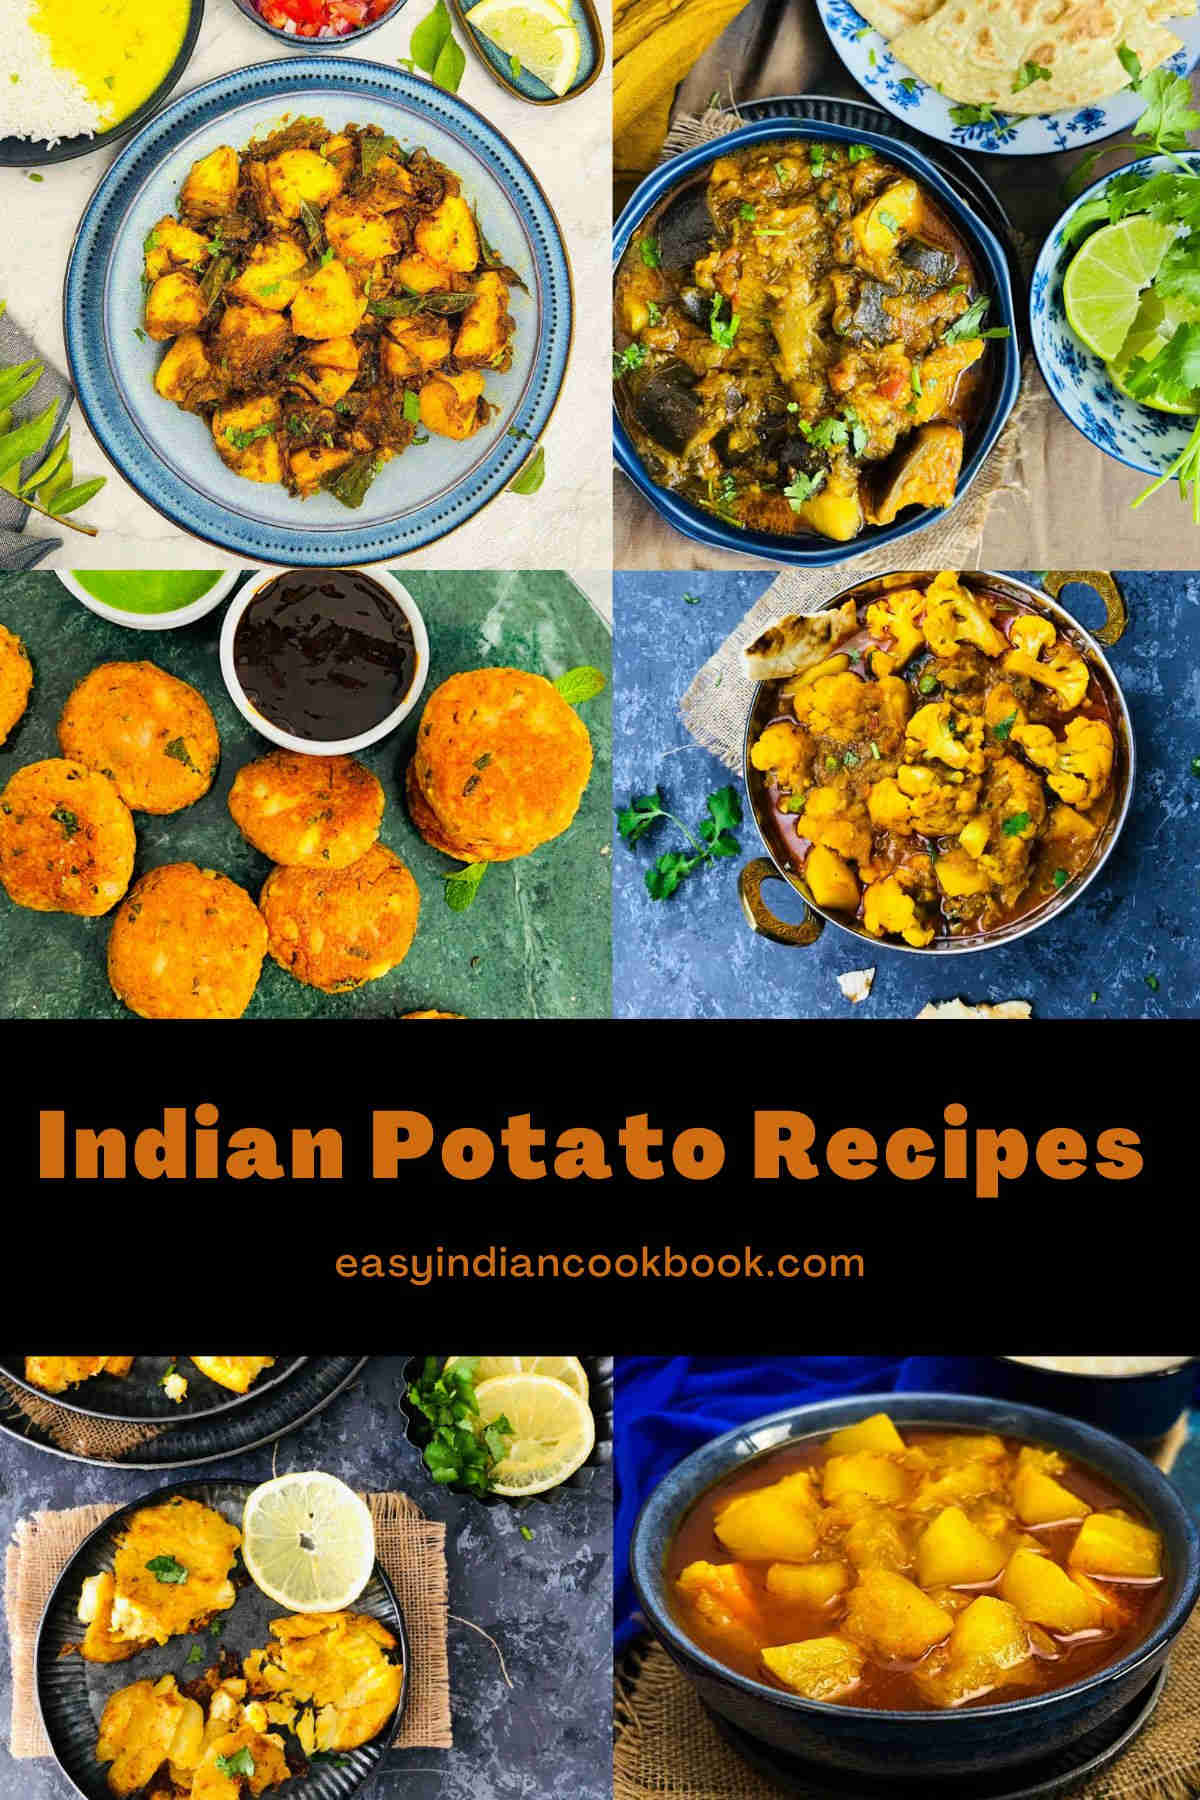 Indian potato recipes collection.